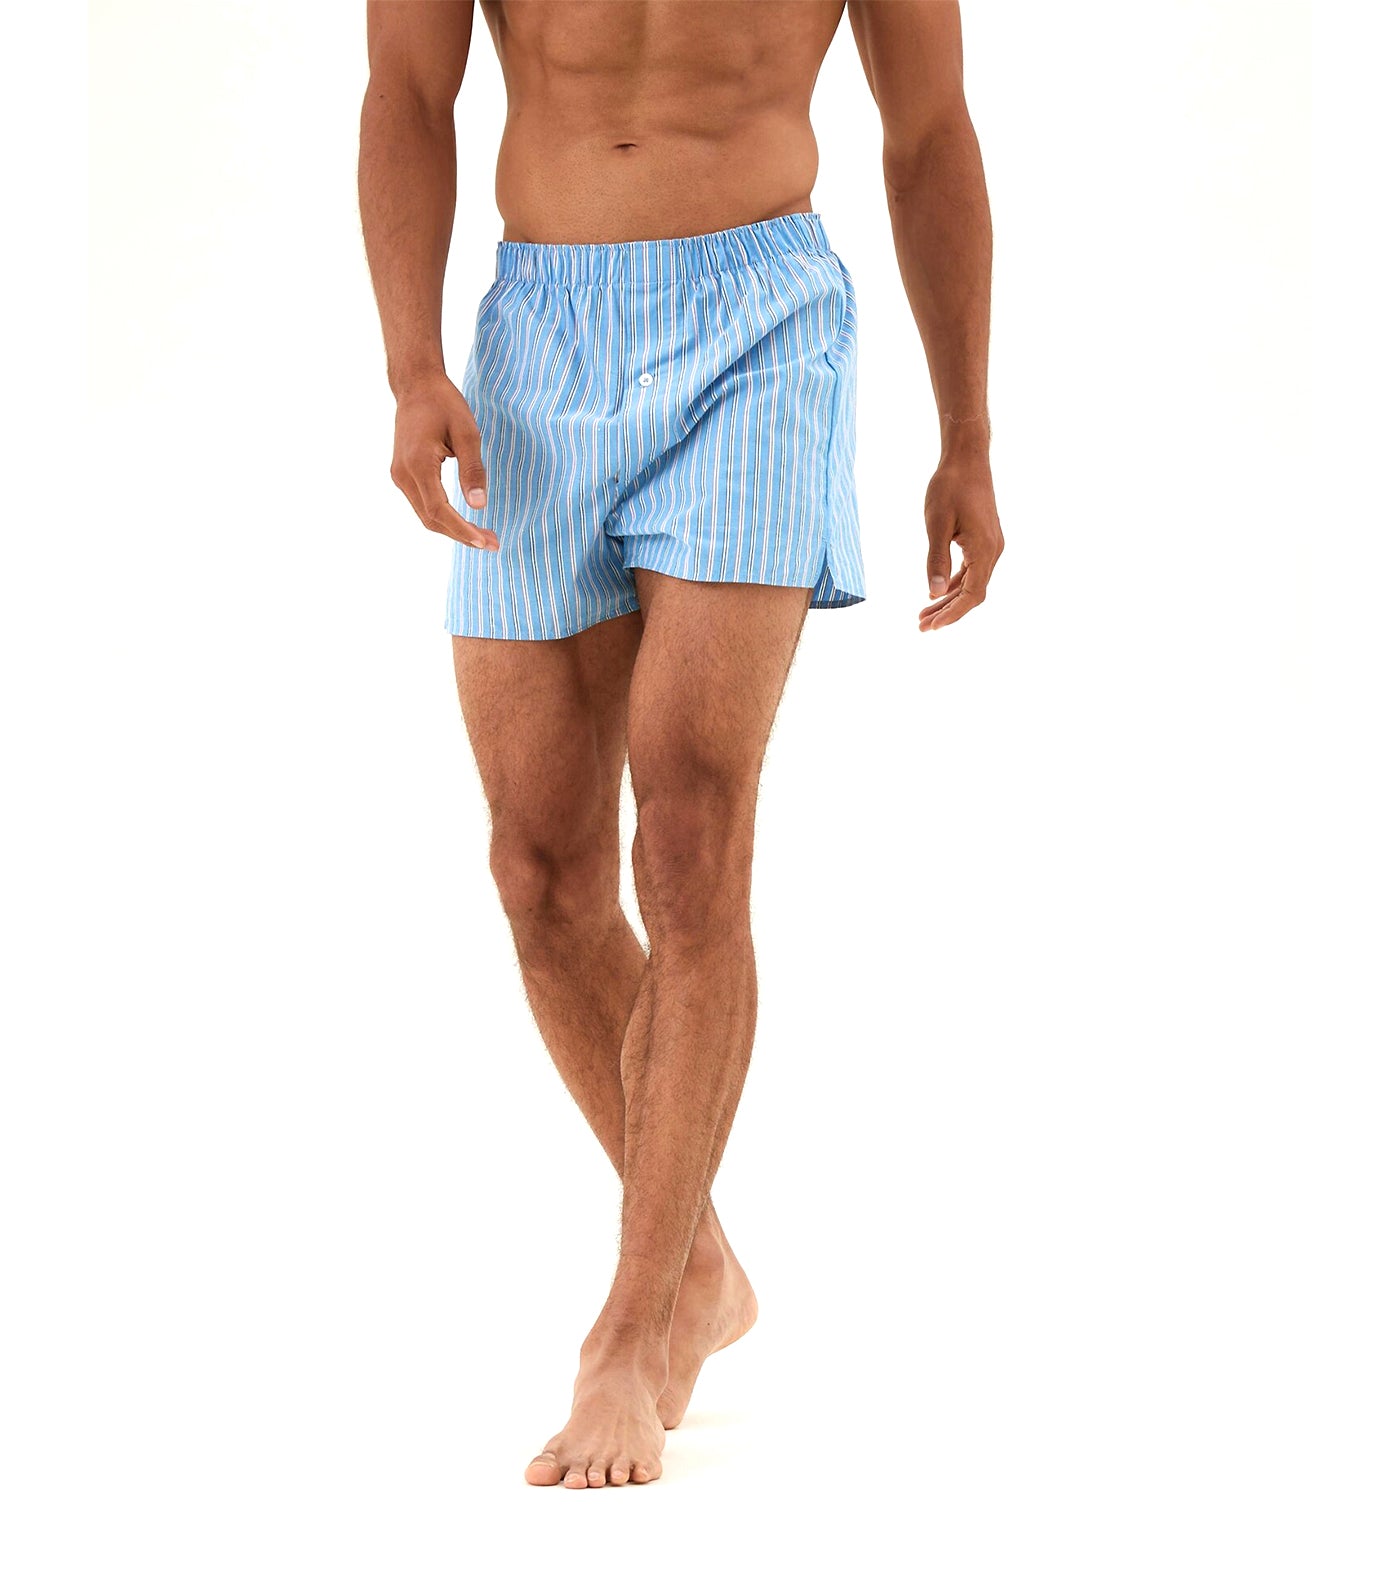 Boxer Shorts Pack Of 12 Men's Woven Boxers Cotton Rich Comfort Fit Underwear